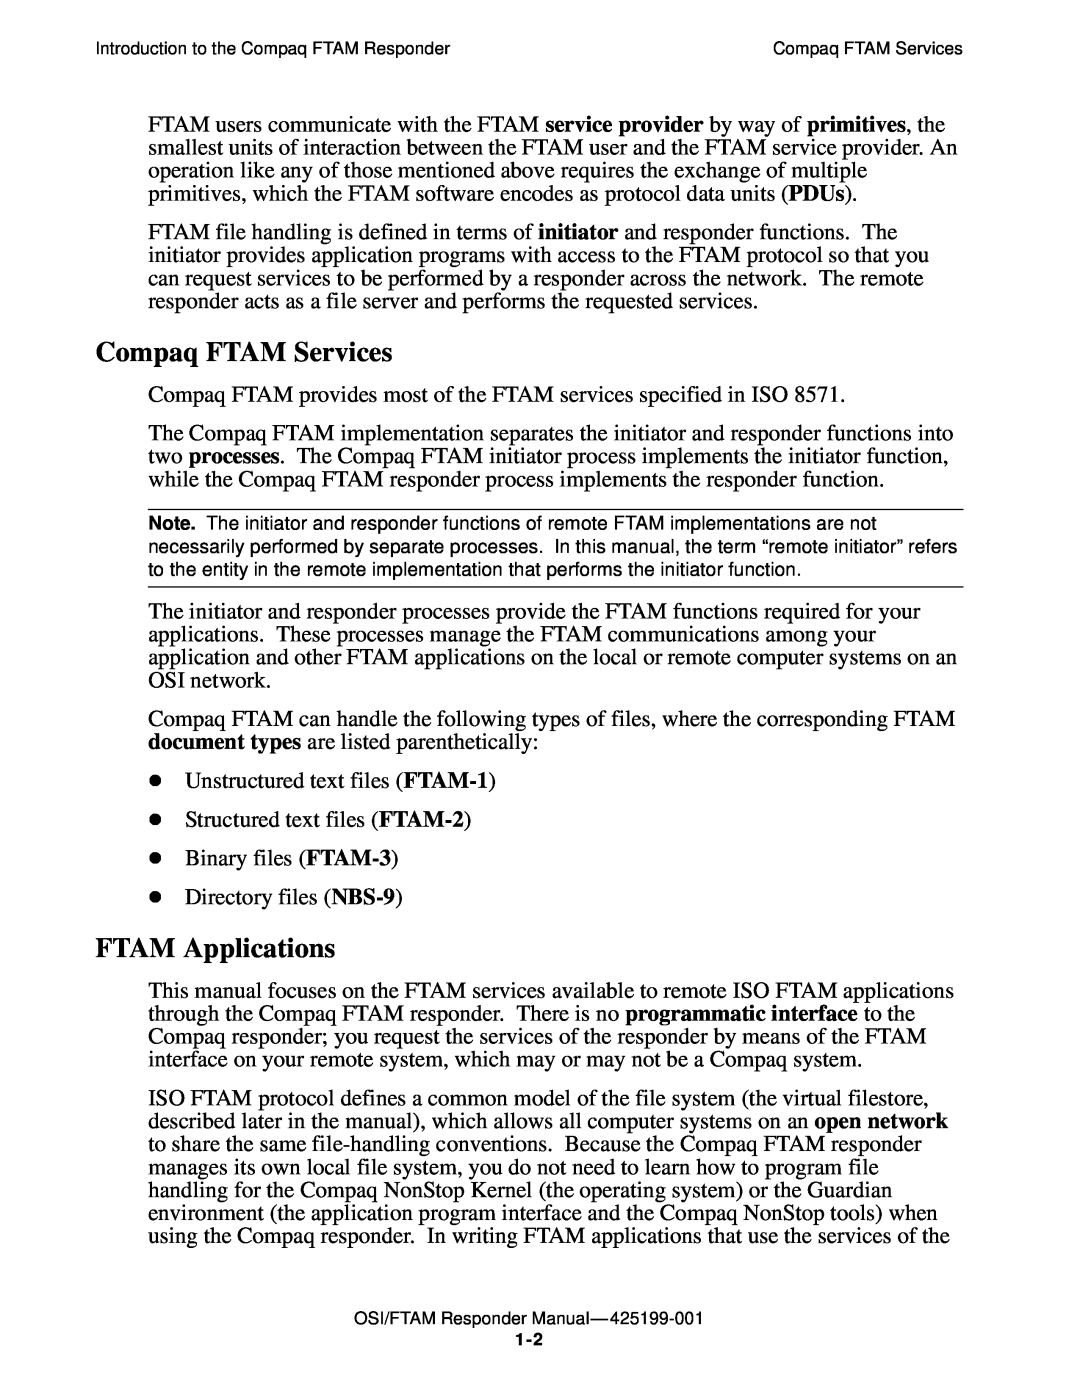 Compaq OSI/APLMGR D43, OSI/FTAM D43 manual Compaq FTAM Services, FTAM Applications 